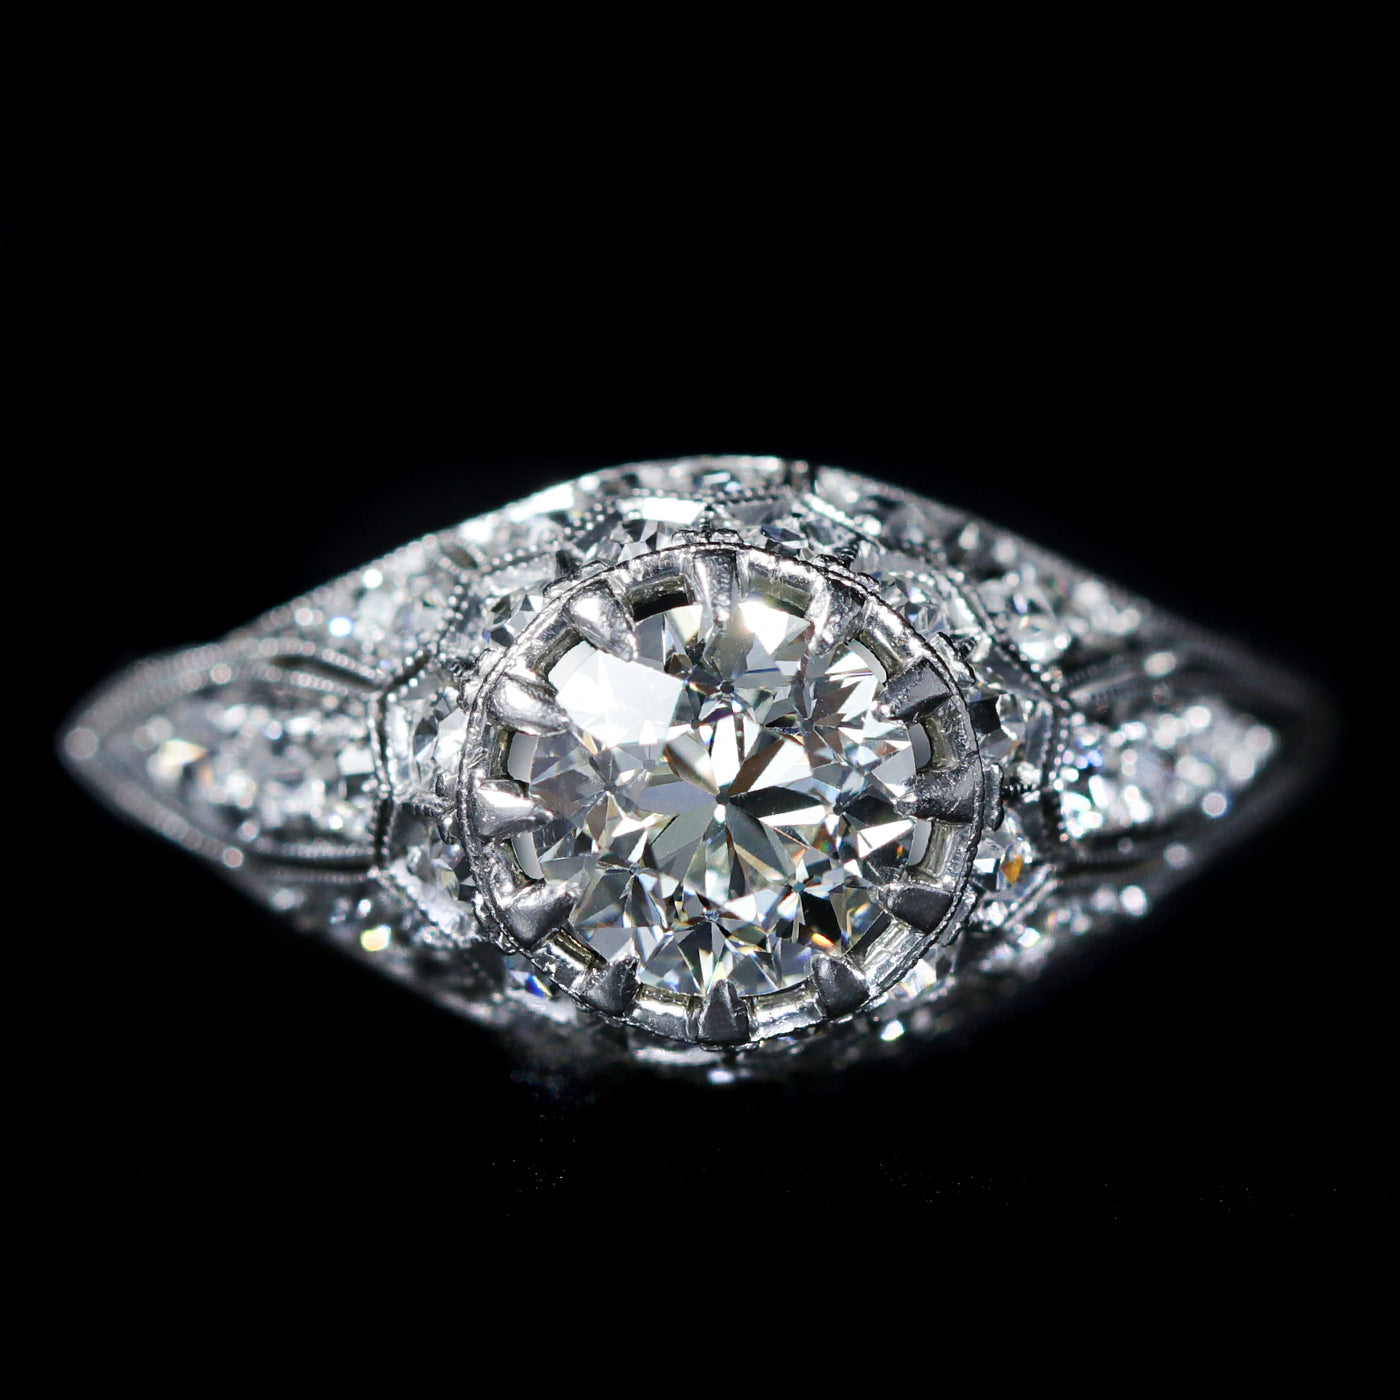 Estate Platinum 0.80 Carat Old European Cut Diamond Engagement Ring